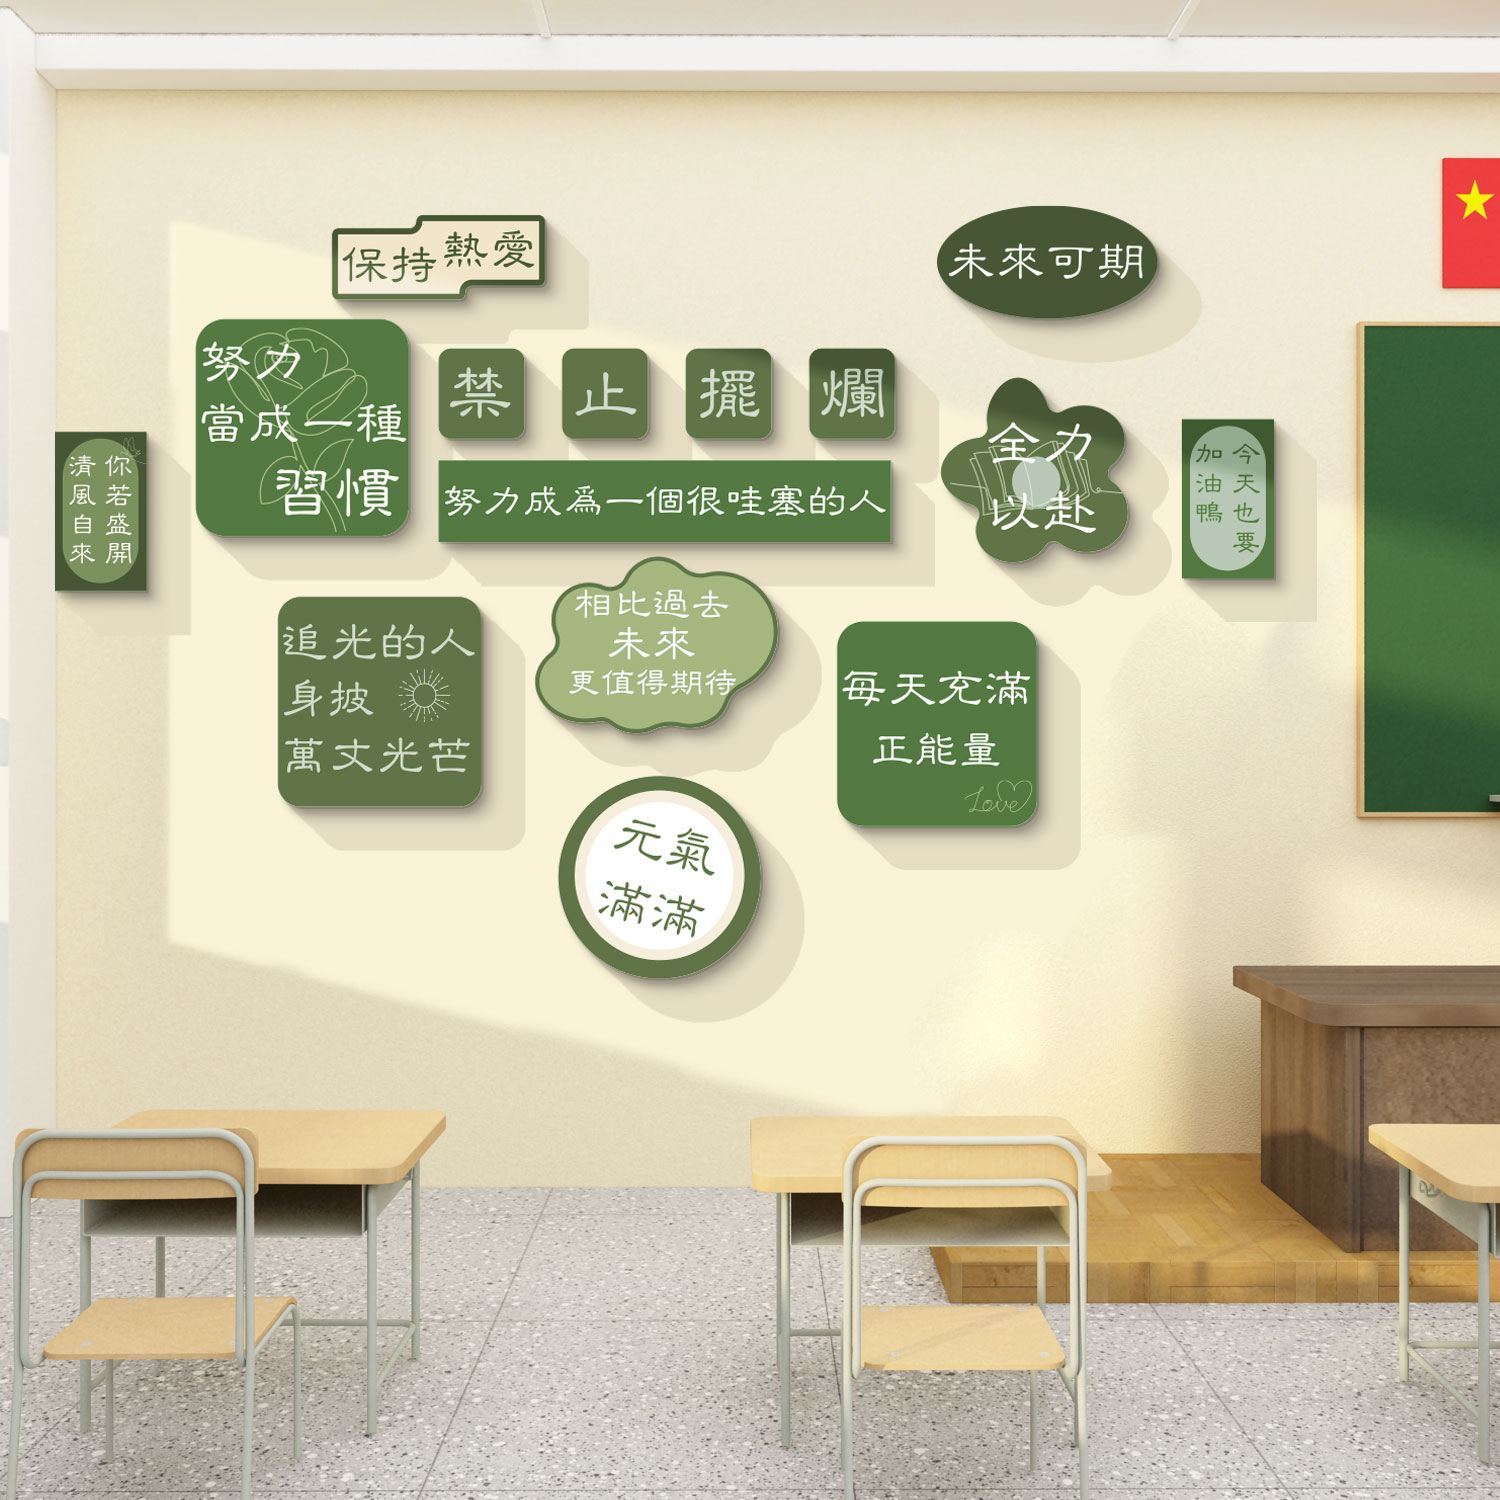 班级文化墙贴教室布置装饰初高中辅导培训机构黑板报励志标语自习